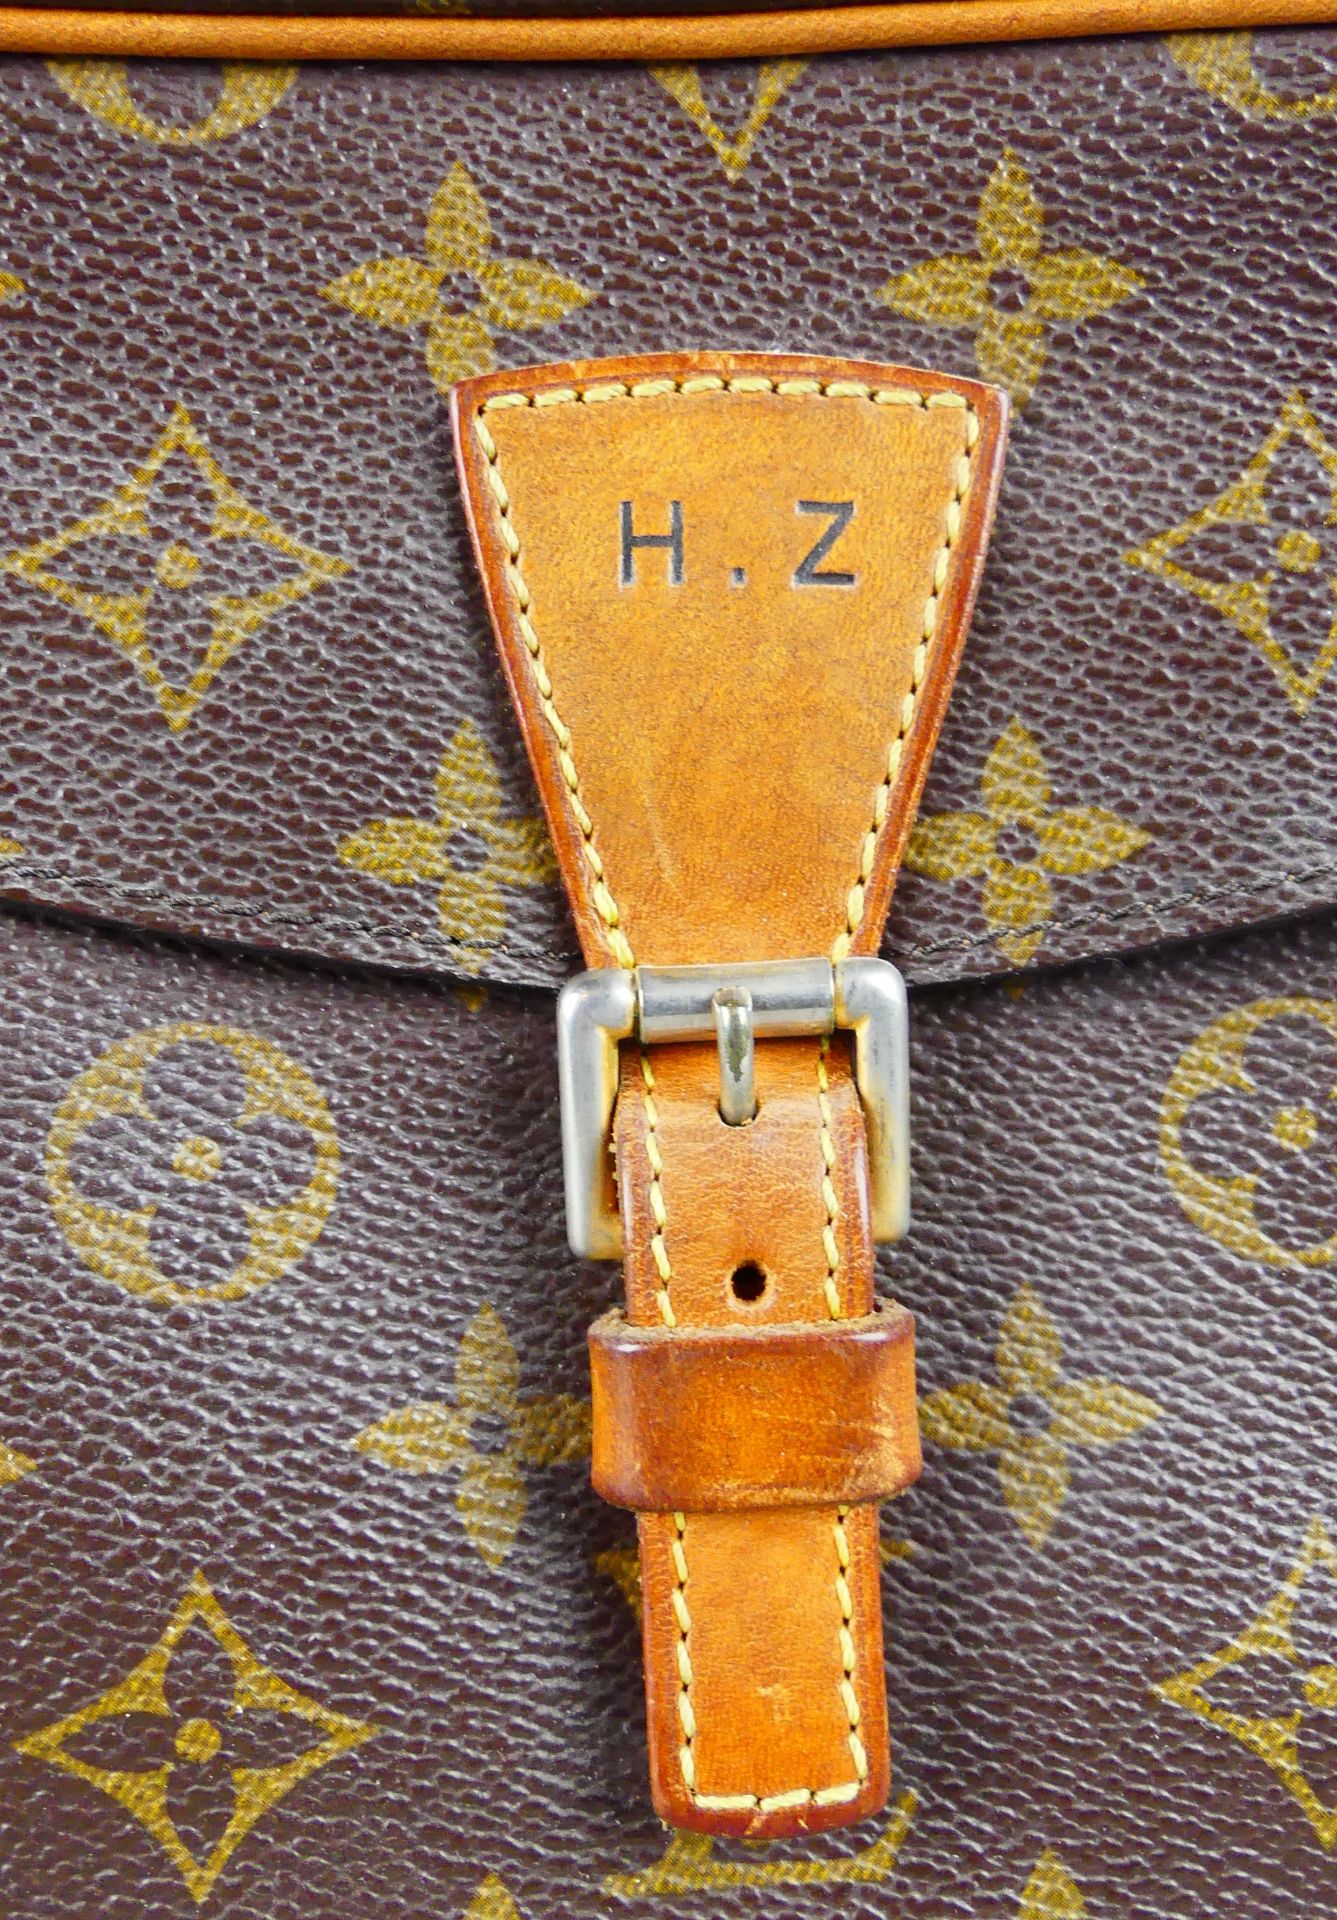 Louis Vuitton Handtasche, Initialen H.Z, Modell "Jeune Fille", - Bild 2 aus 5